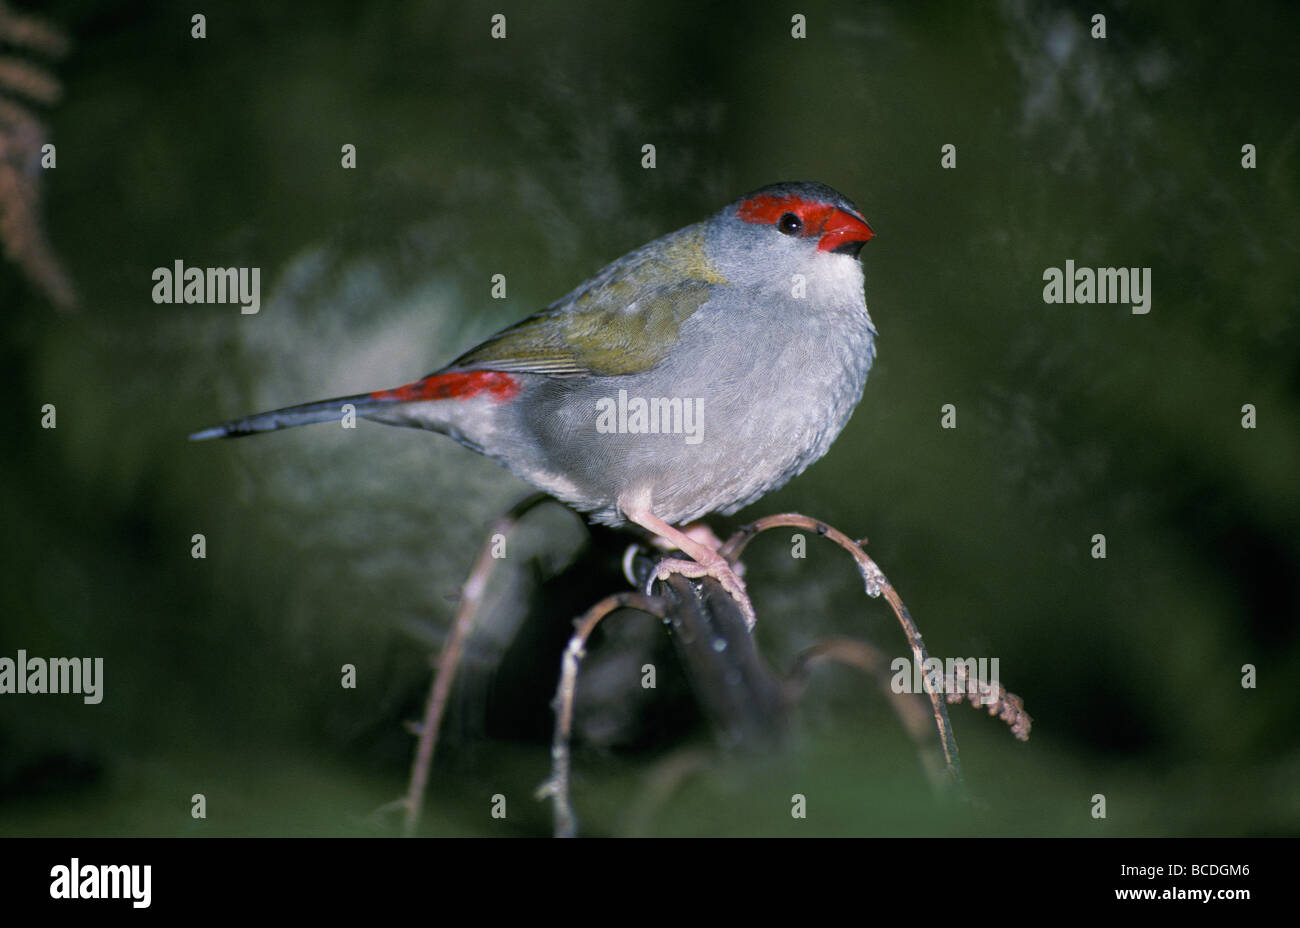 La queue aux couleurs vives et à la tête d'un Red-Browed plumes Finch. Banque D'Images